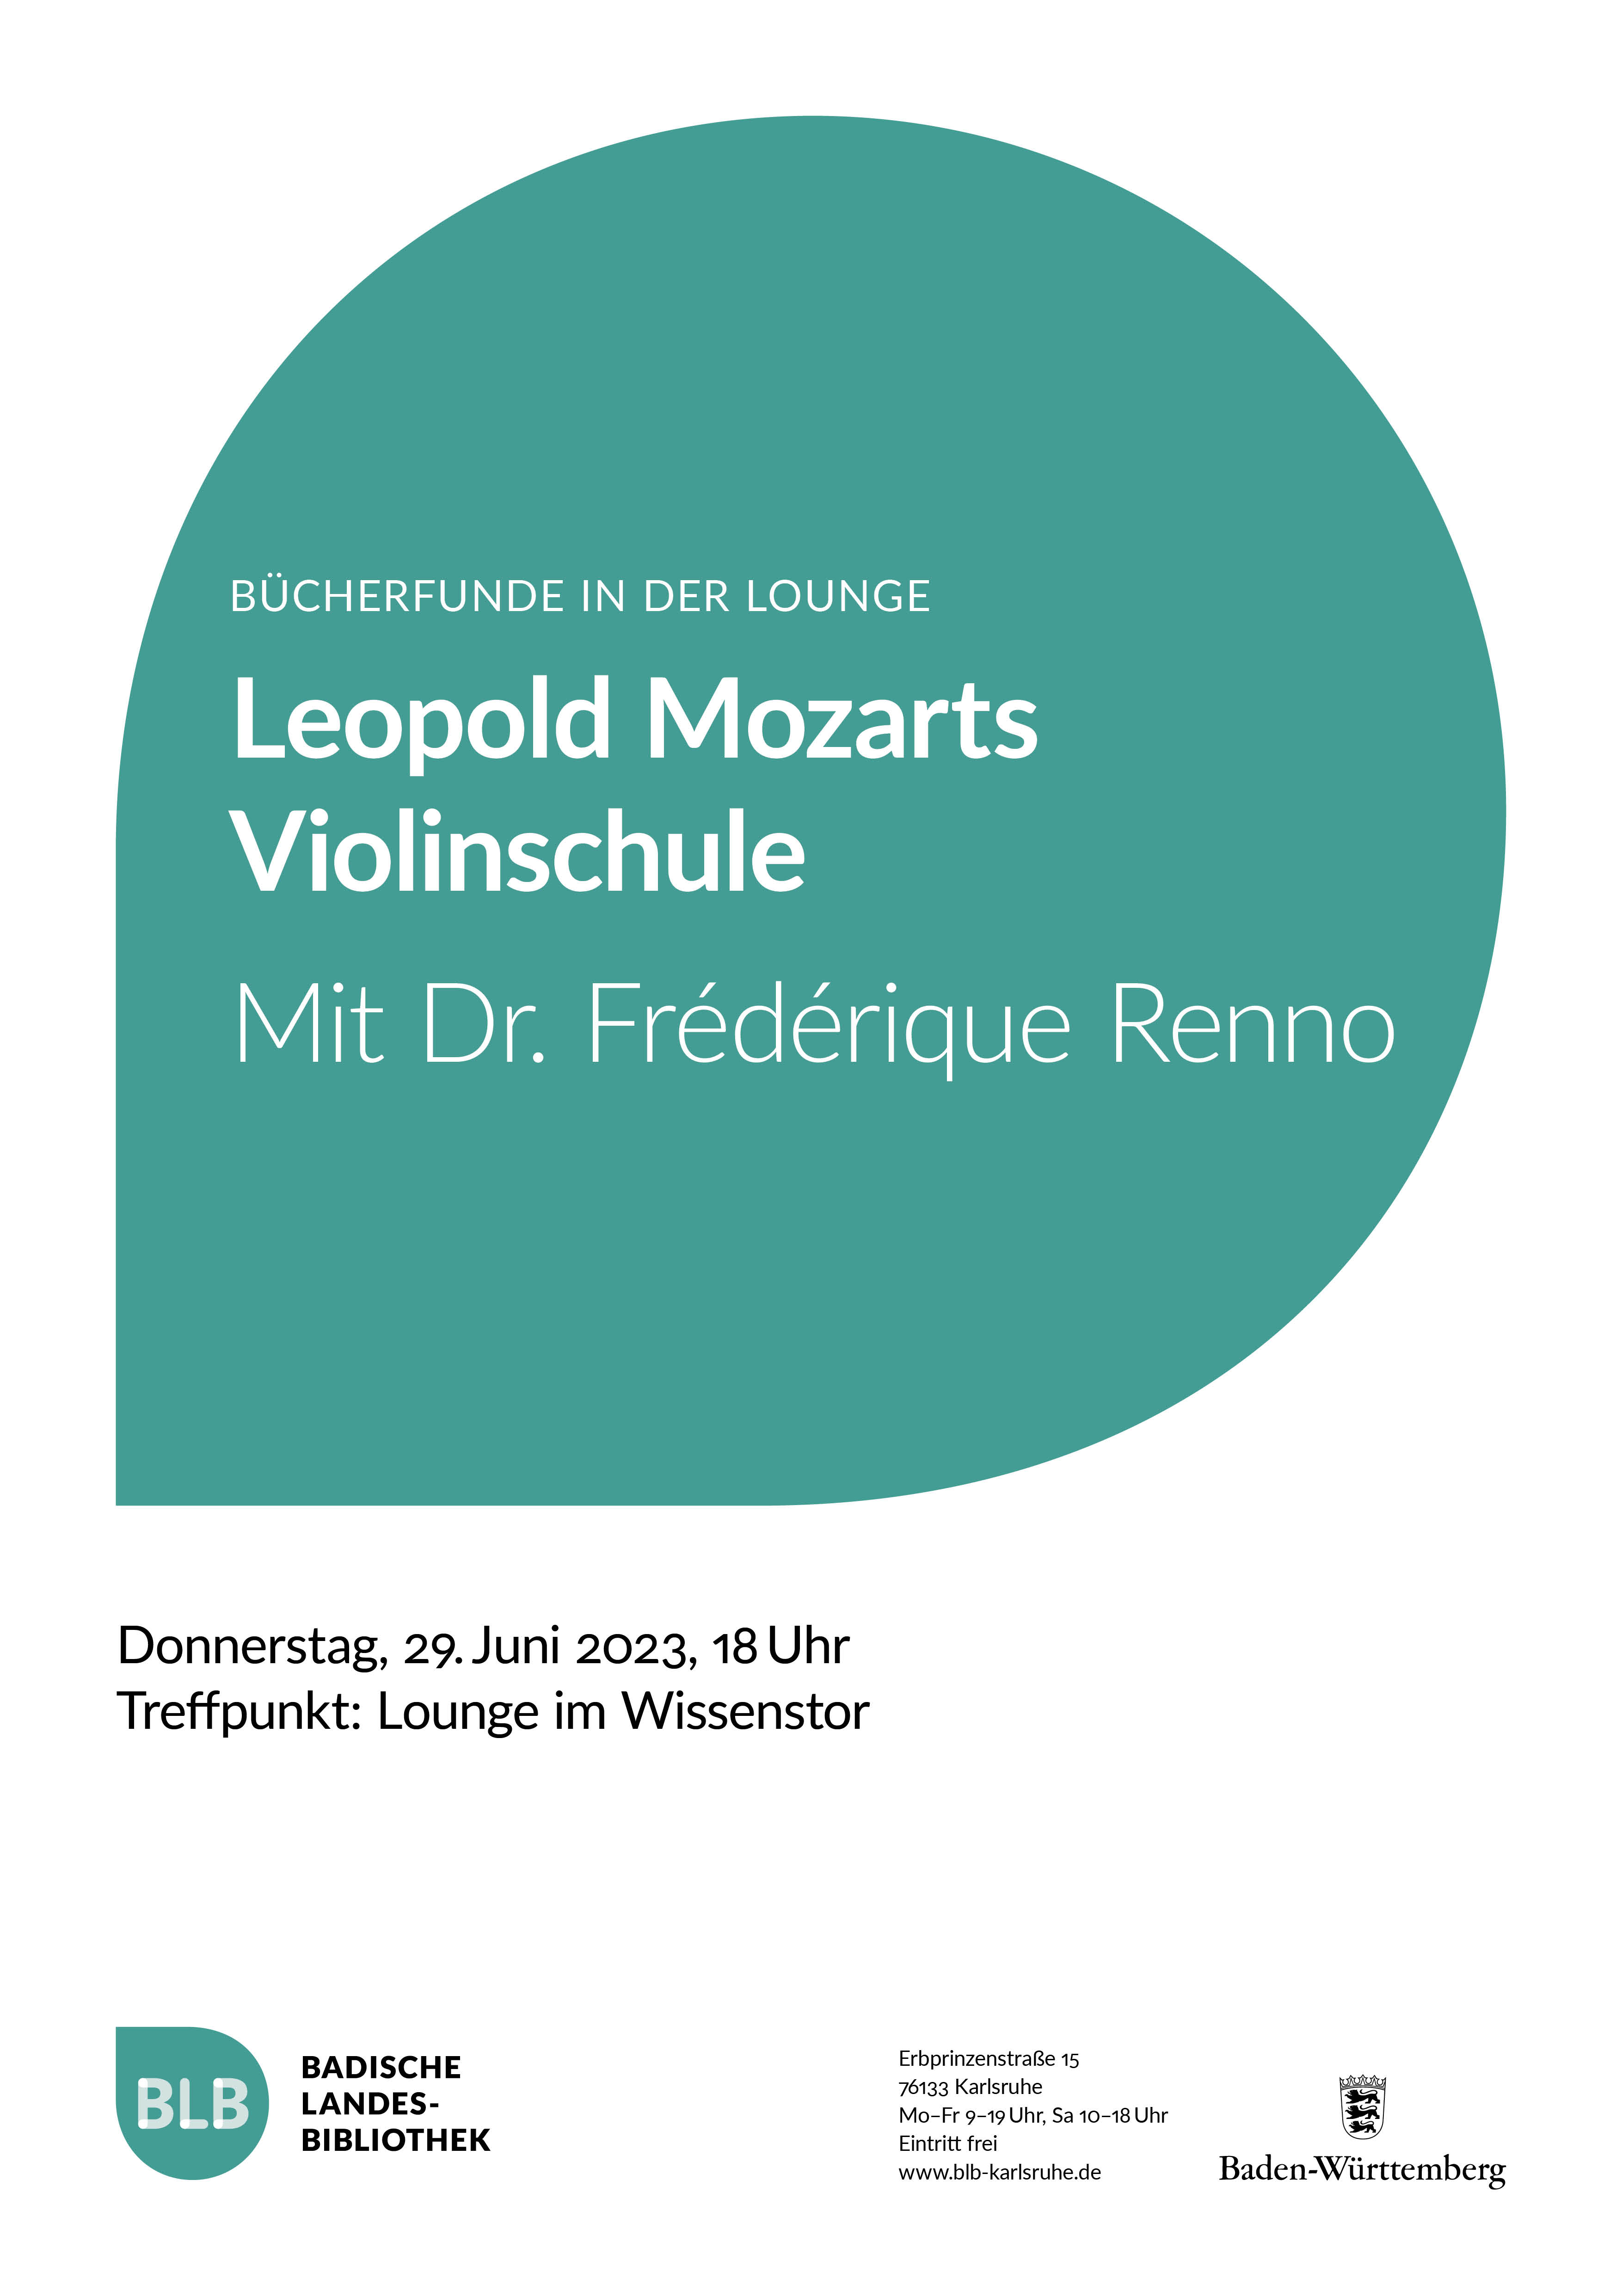 Zu sehen ist ein petrolfarbenes Monogon mit der Aufschrift "Leopold Mozarts Violinschule". Die Bücherfunde in der Lounge im Wissenstor finden mit Dr. Frédérique Renno am Donnerstag, dem 29. Juni 2023 um 18 Uhr statt. 